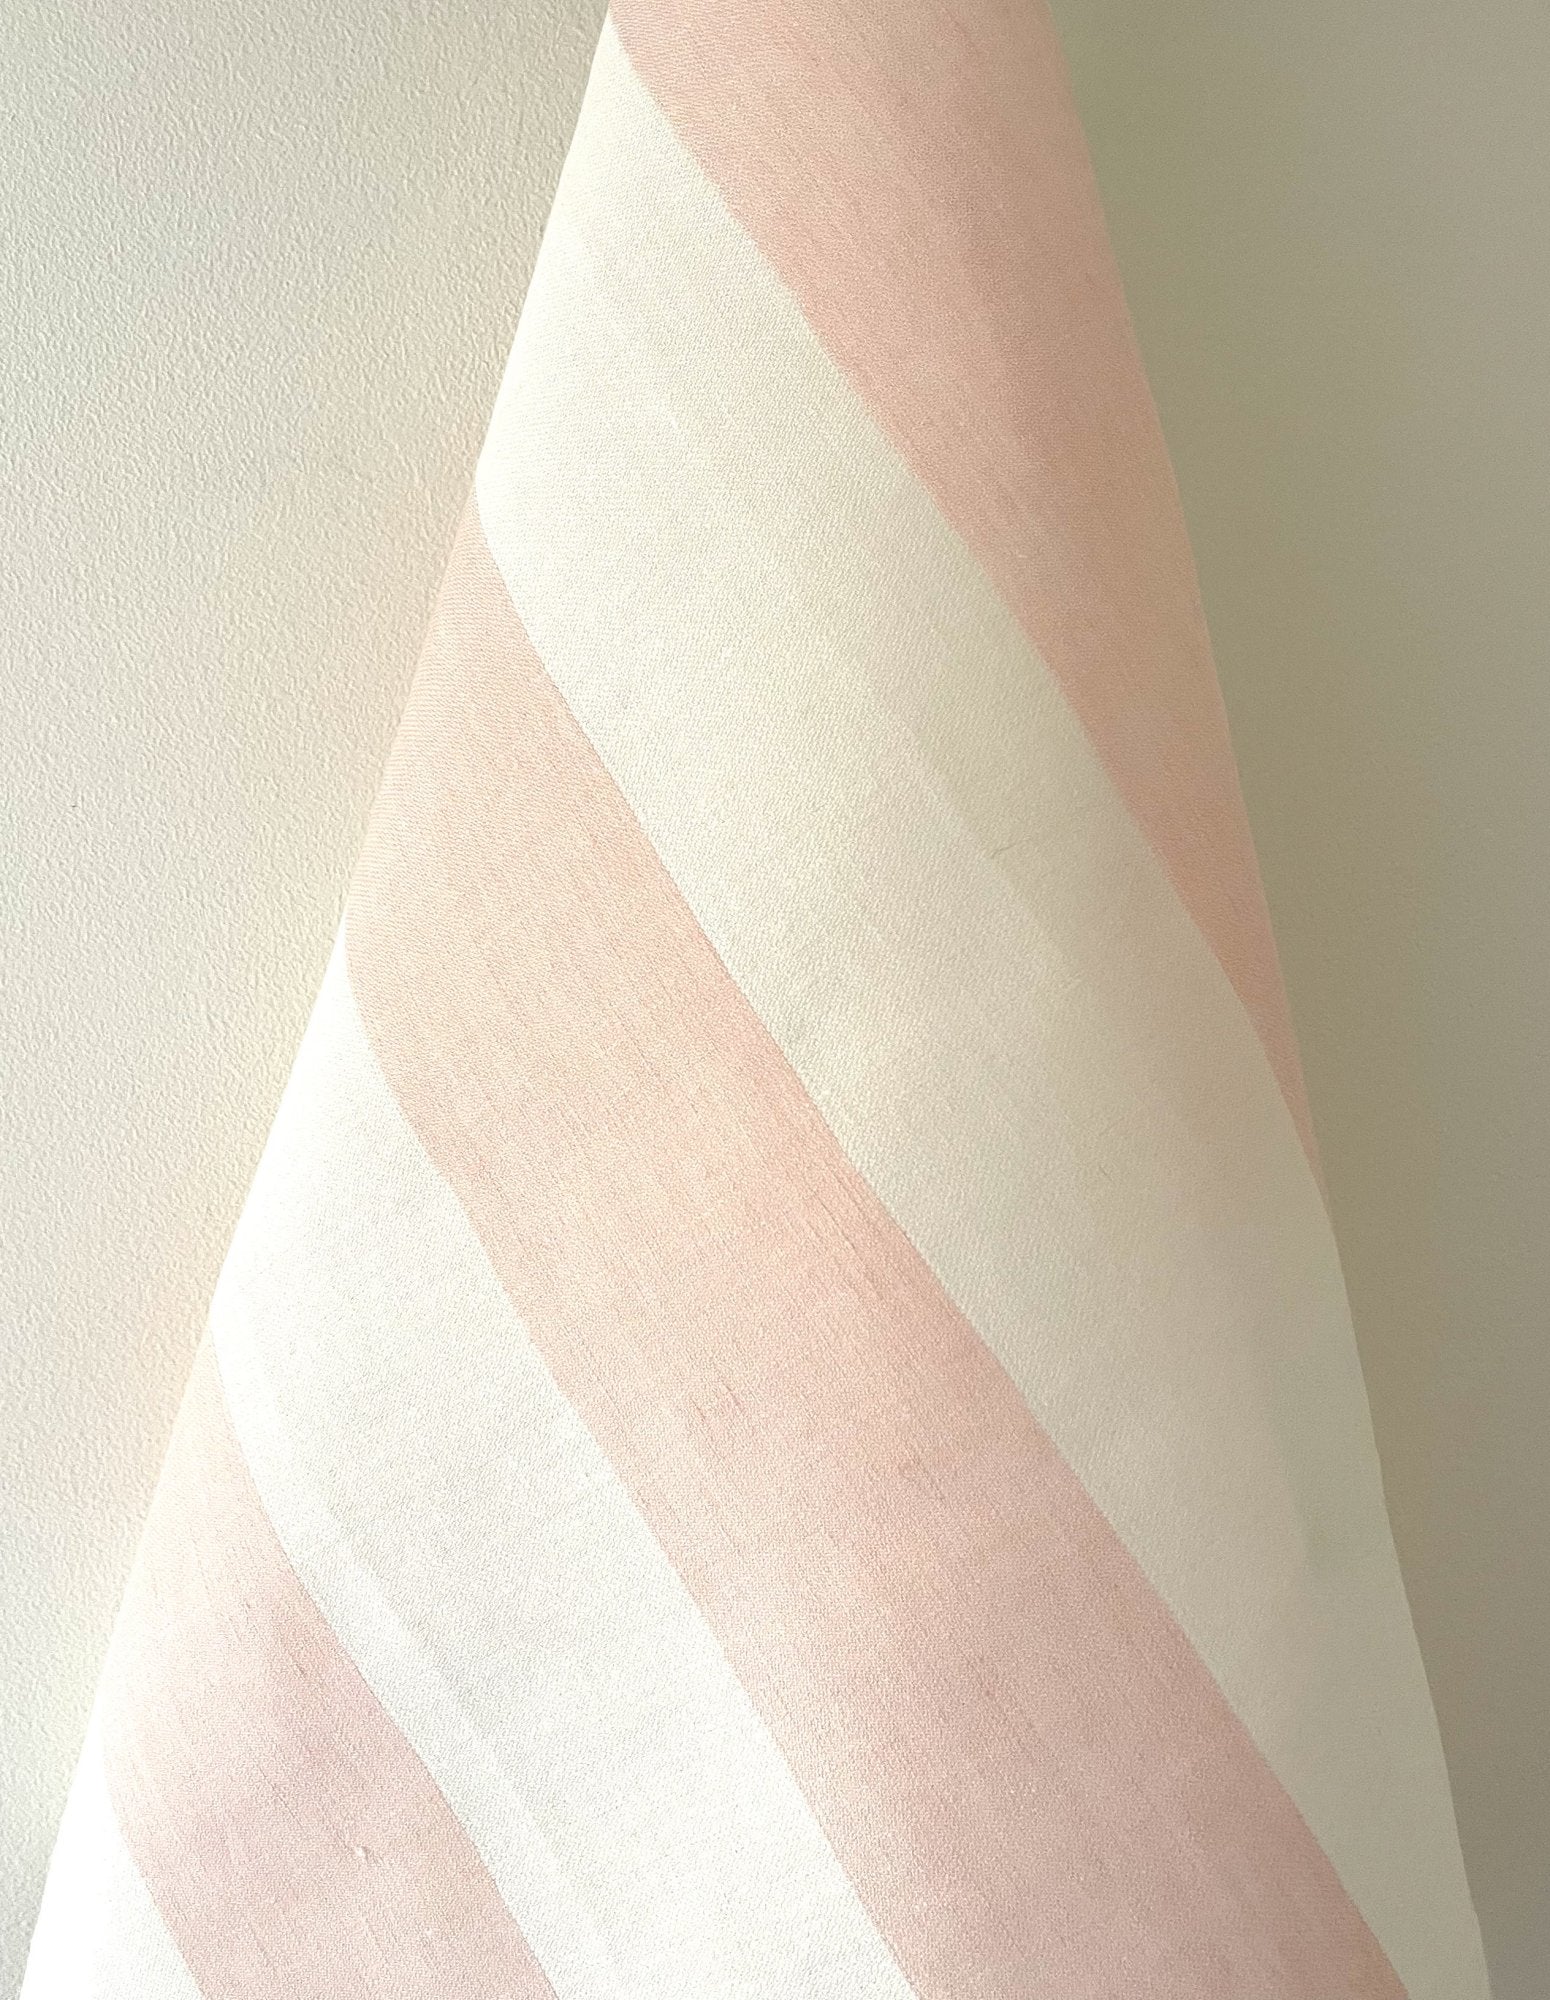 Thomas Ferguson Woven Irish Linen, “Oyster -Savoy Pink”. Tea Towel – Ireland.